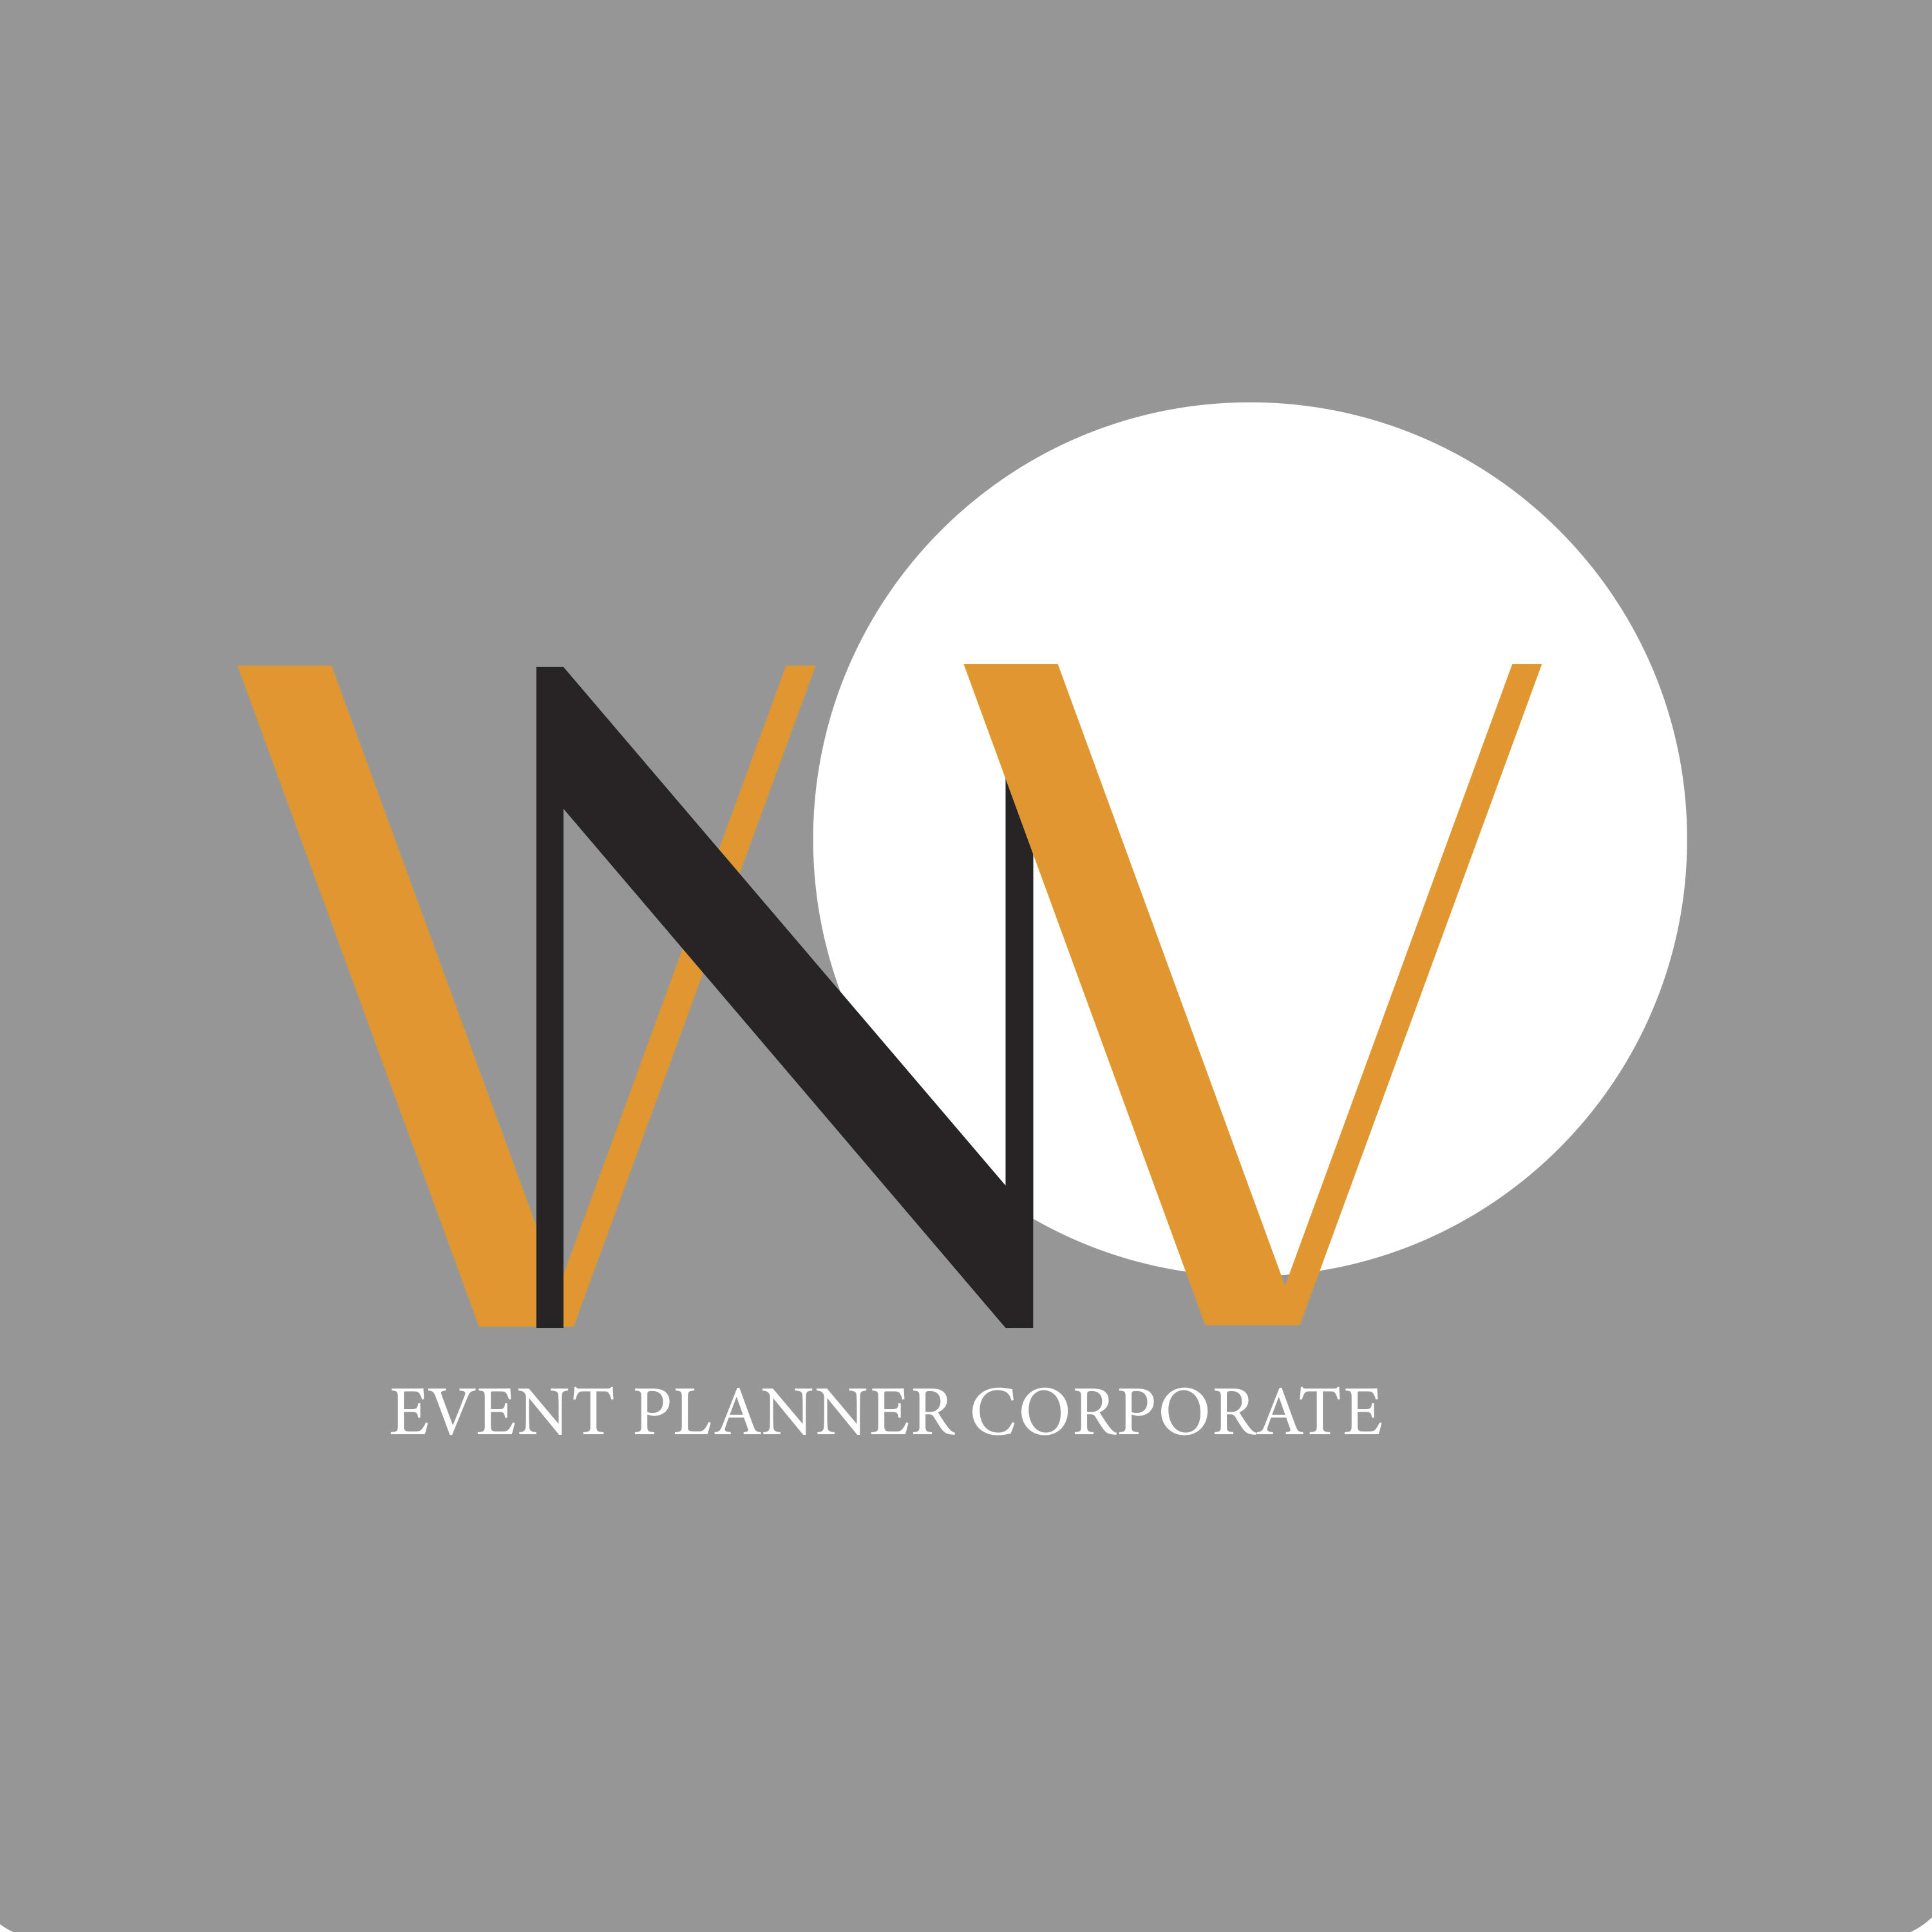 VNV event planner corporate